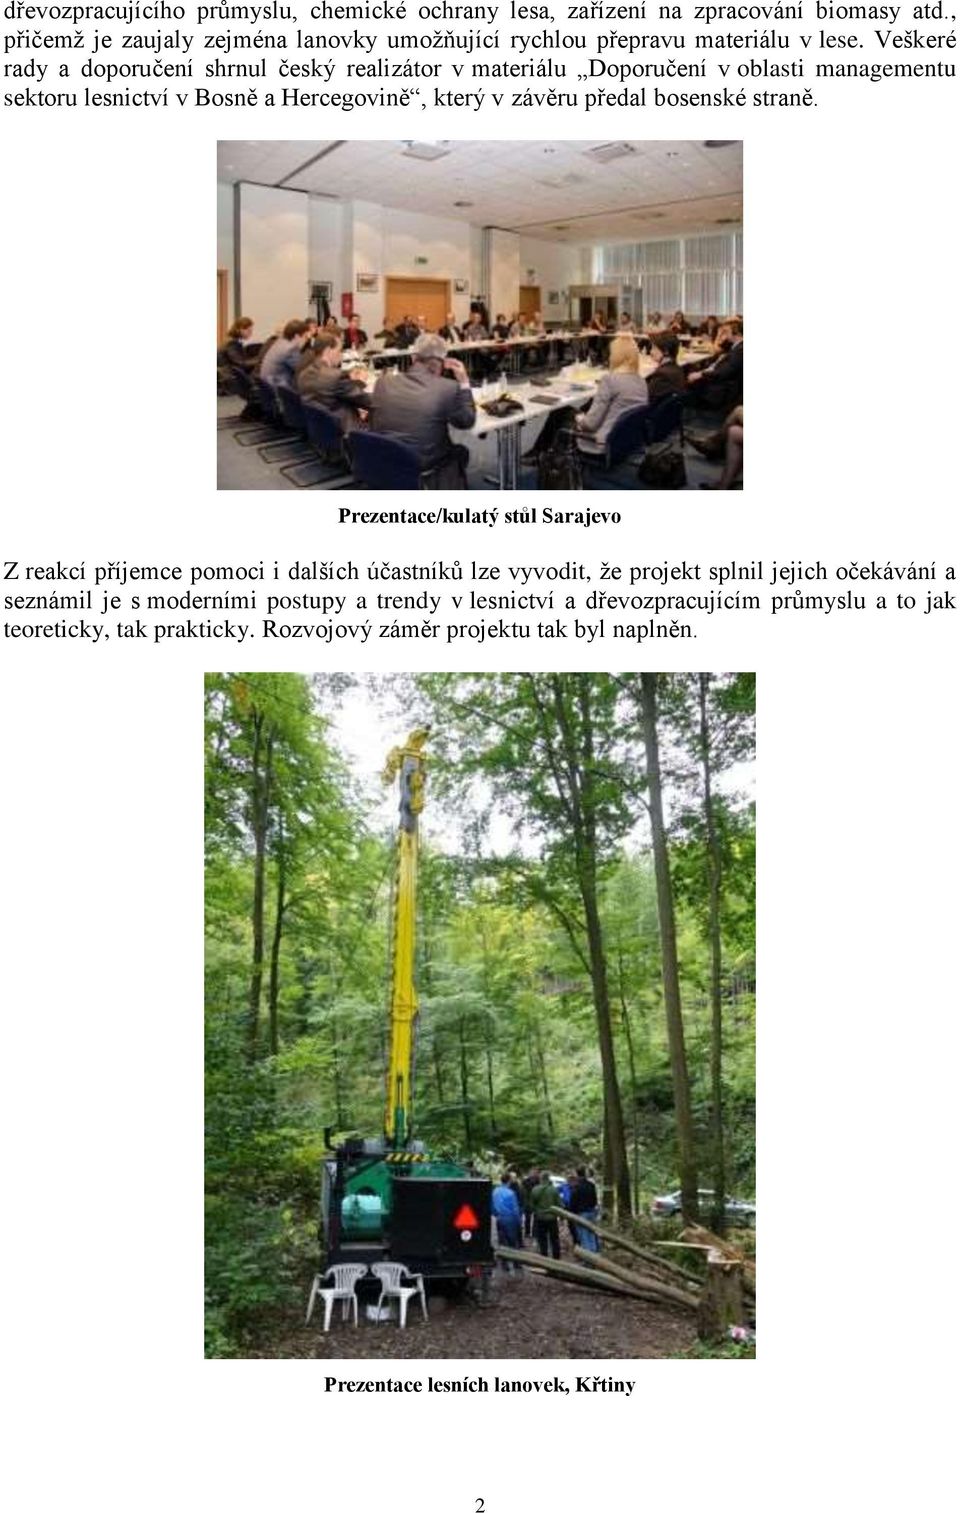 Veškeré rady a doporučení shrnul český realizátor v materiálu Doporučení v oblasti managementu sektoru lesnictví v Bosně a Hercegovině, který v závěru předal bosenské